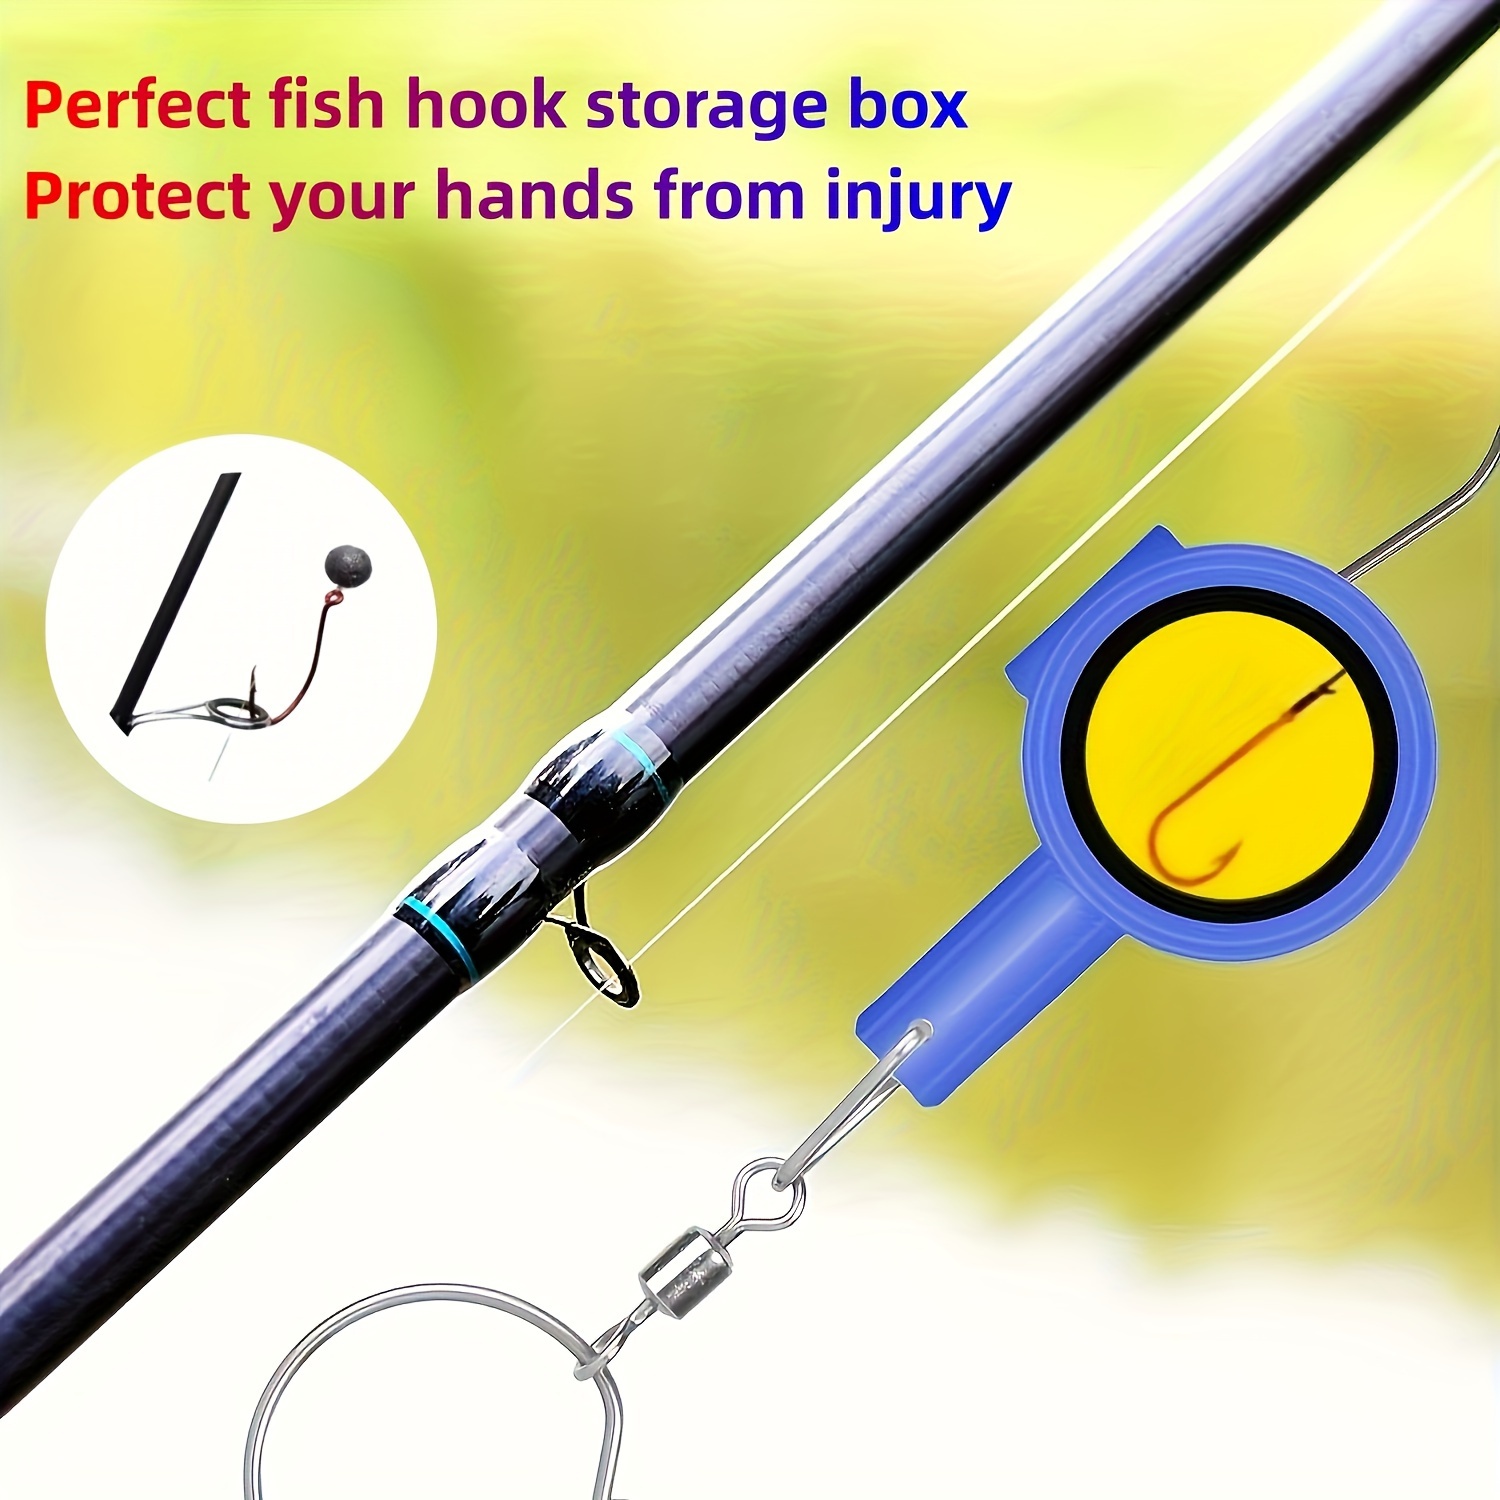 Les nœuds utiles pour la pêche - Articles 